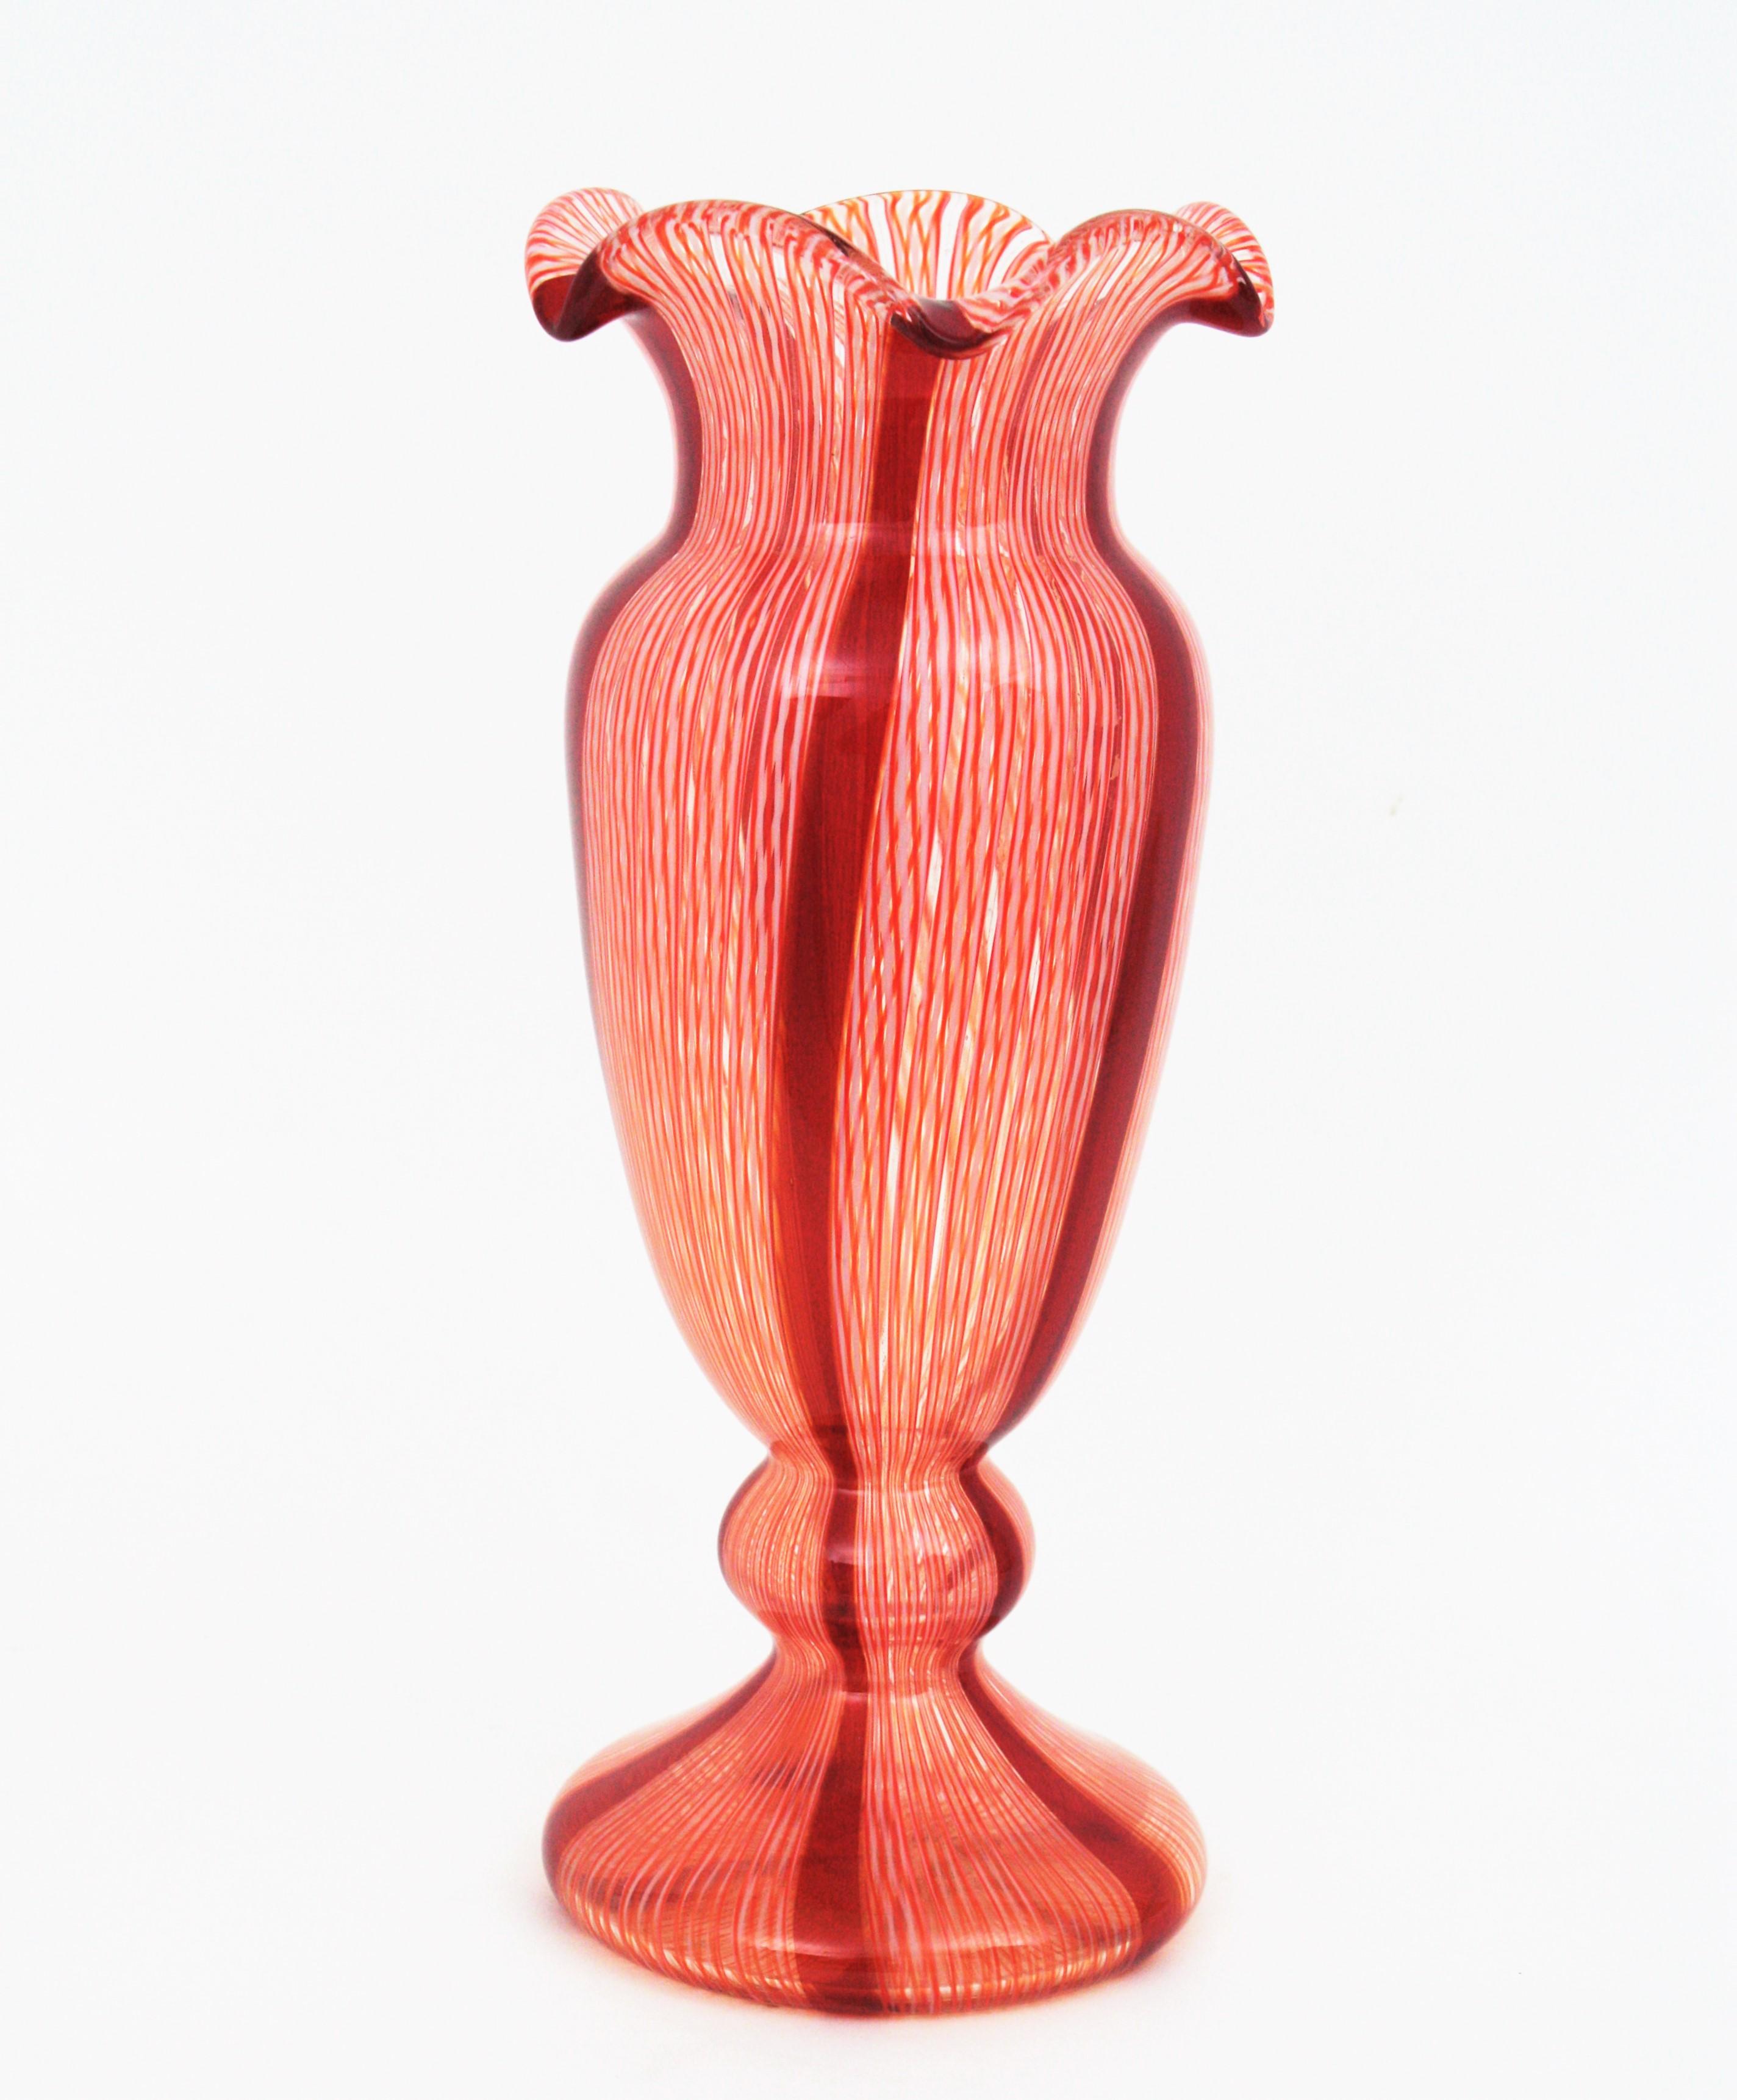 Vase sculptural en verre soufflé Zanfirico Murano du début du 20e siècle avec des rubans rouges et blancs.  Attribué à Fratelli Toso. 
Réalisé avec la technique de soufflage de verre caneworking en verre rouge rubis et blanc avec des accents en